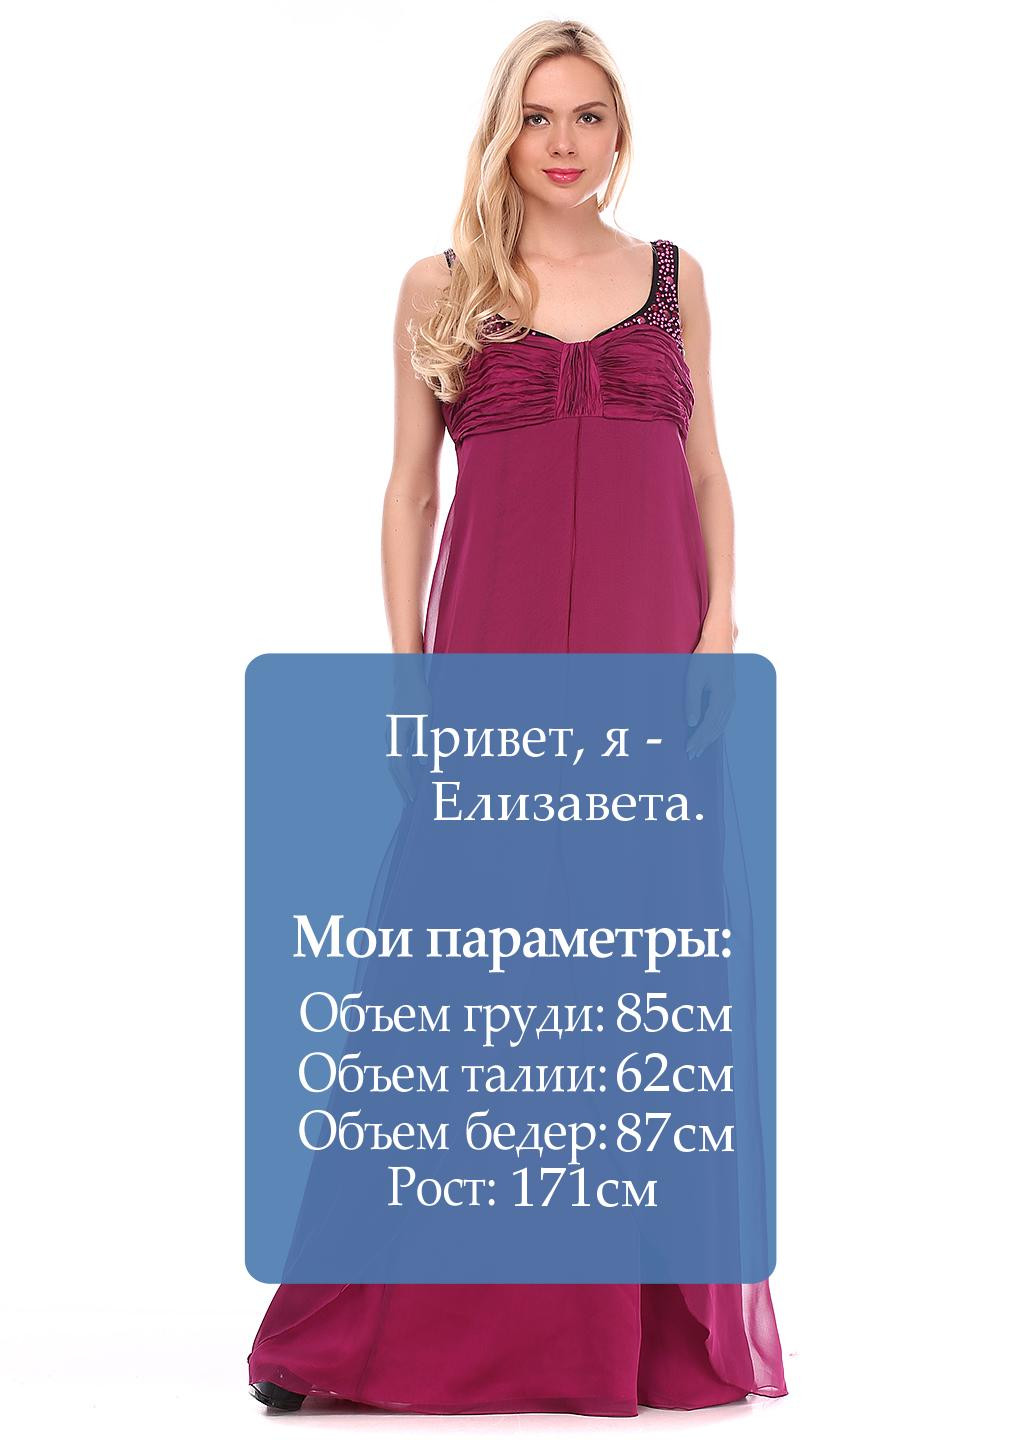 Фуксиновое (цвета Фуксия) вечернее платье а-силуэт Vera Mont однотонное